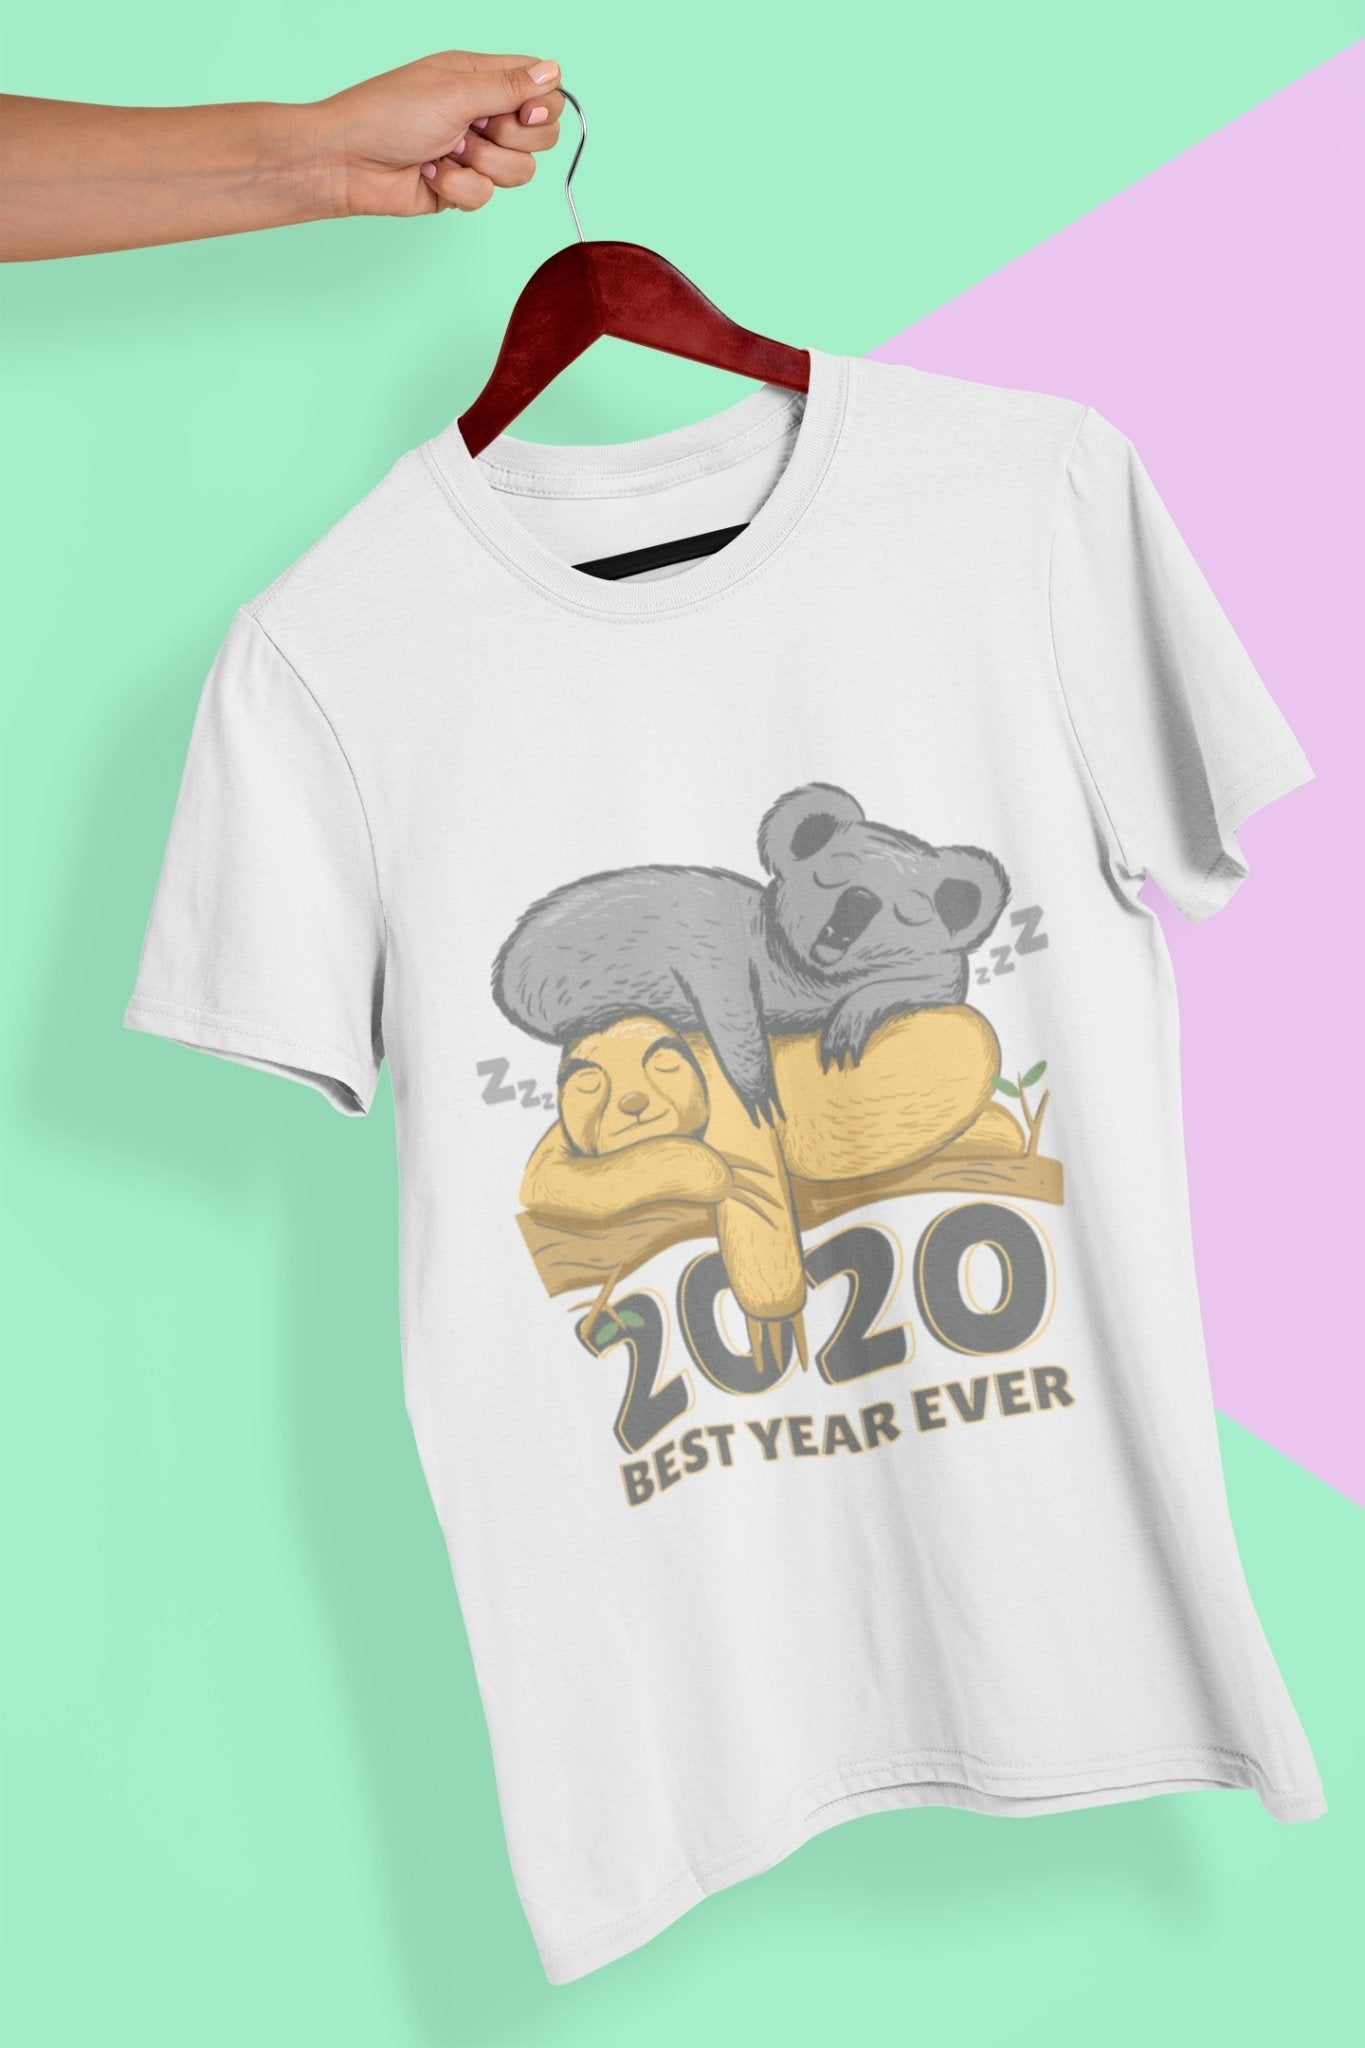 2020 Best Year Ever Mens Half Sleeves T-shirt- FunkyTeesClub - Funky Tees Club